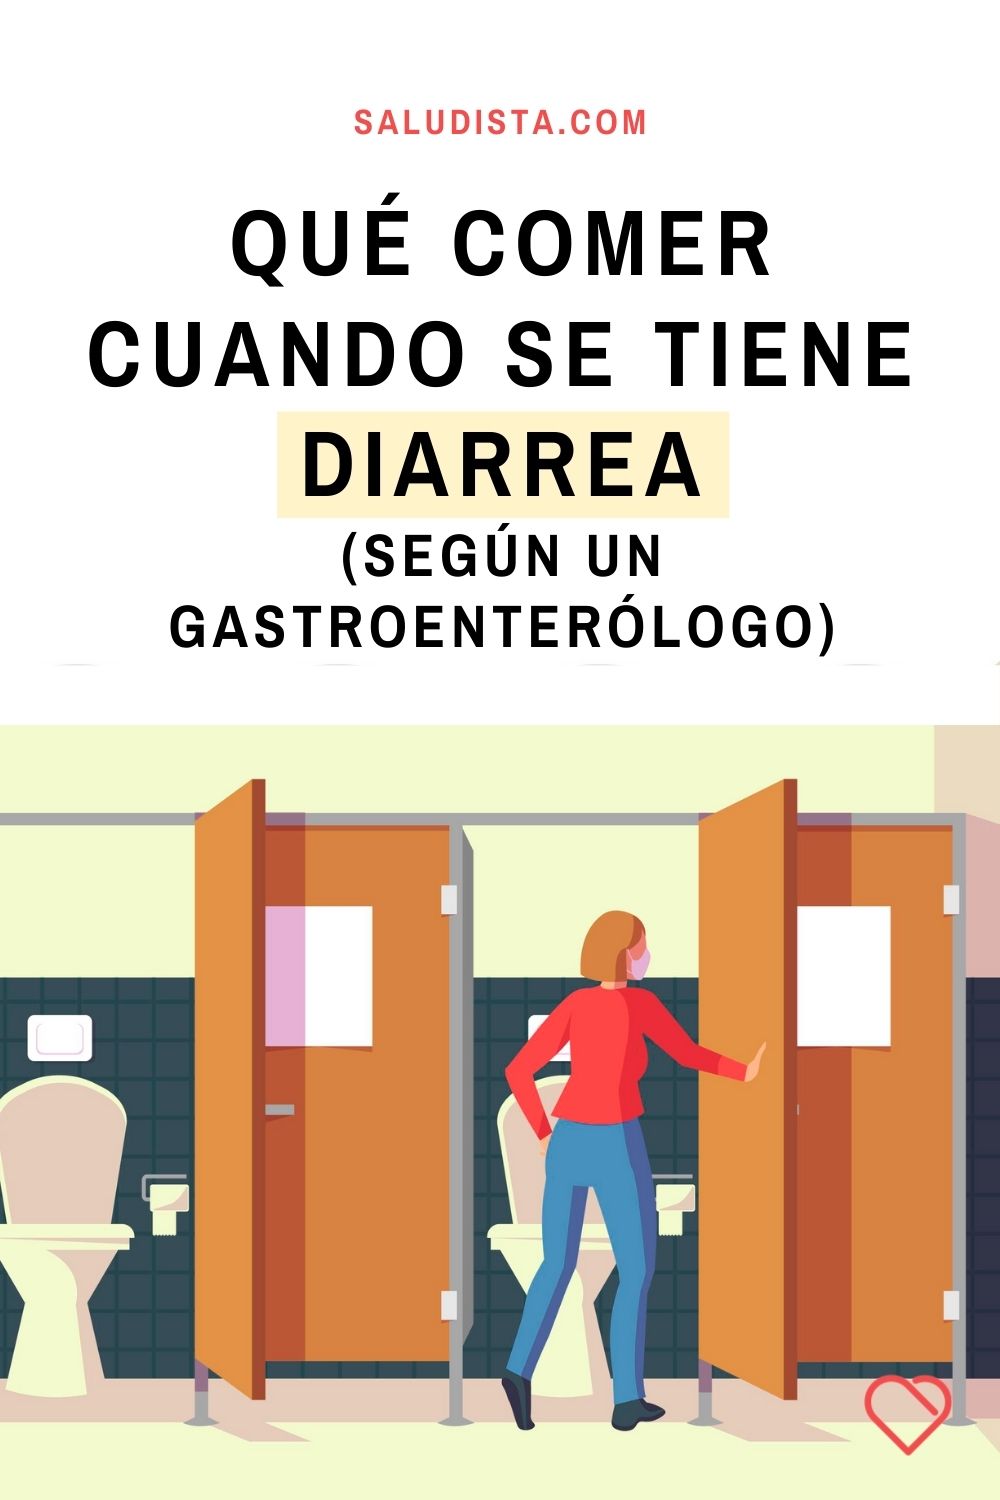 Qué comer cuando se tiene diarrea, según un gastroenterólogo